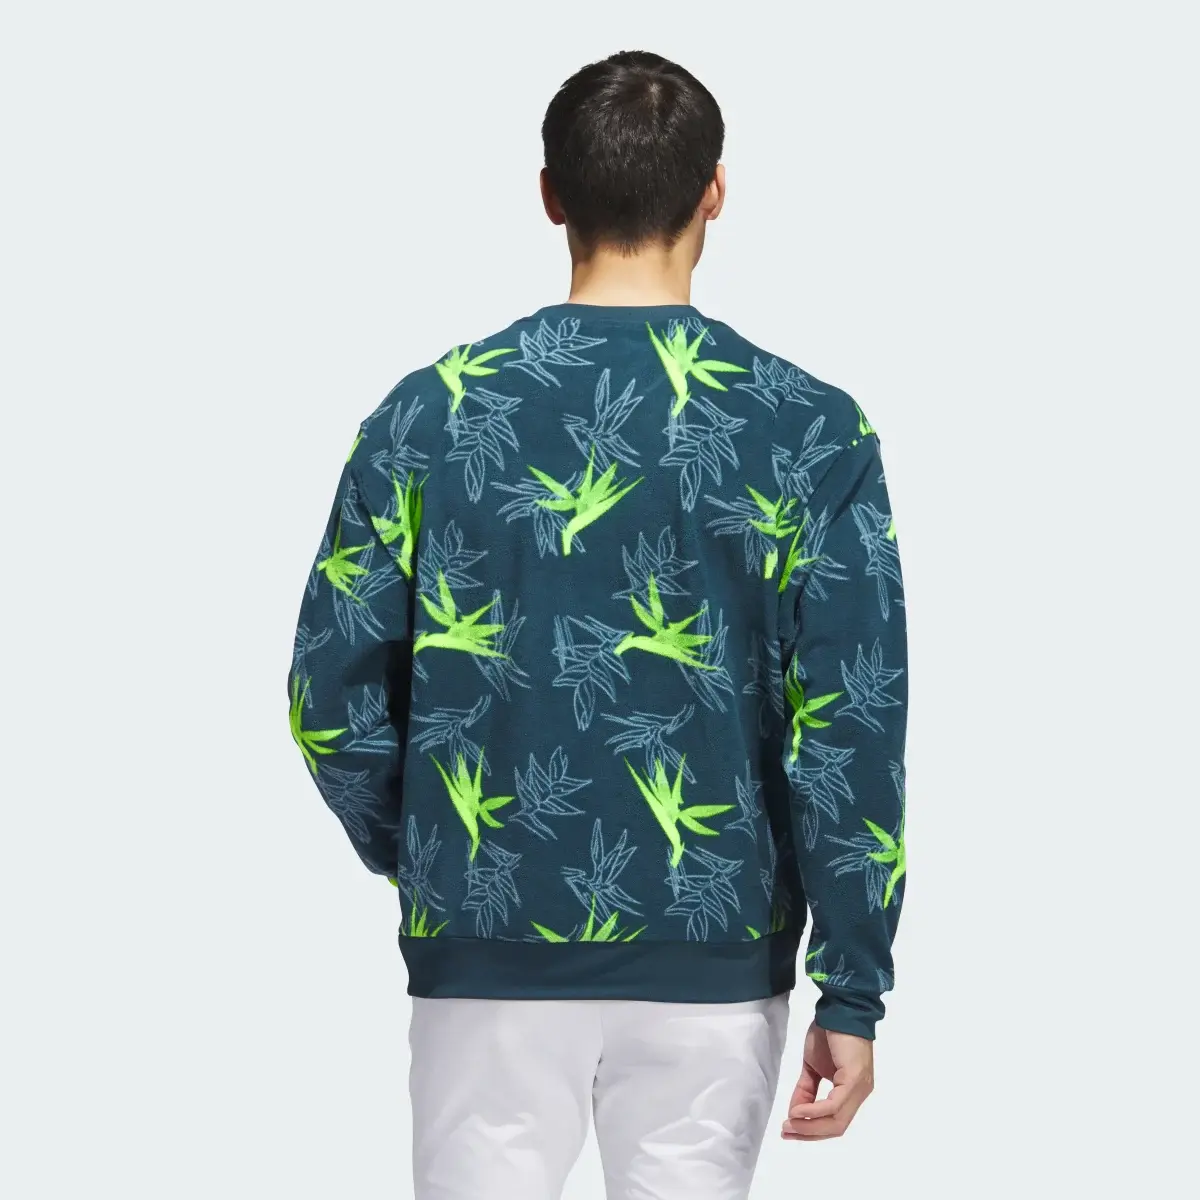 Adidas Sweatshirt Oasis. 3